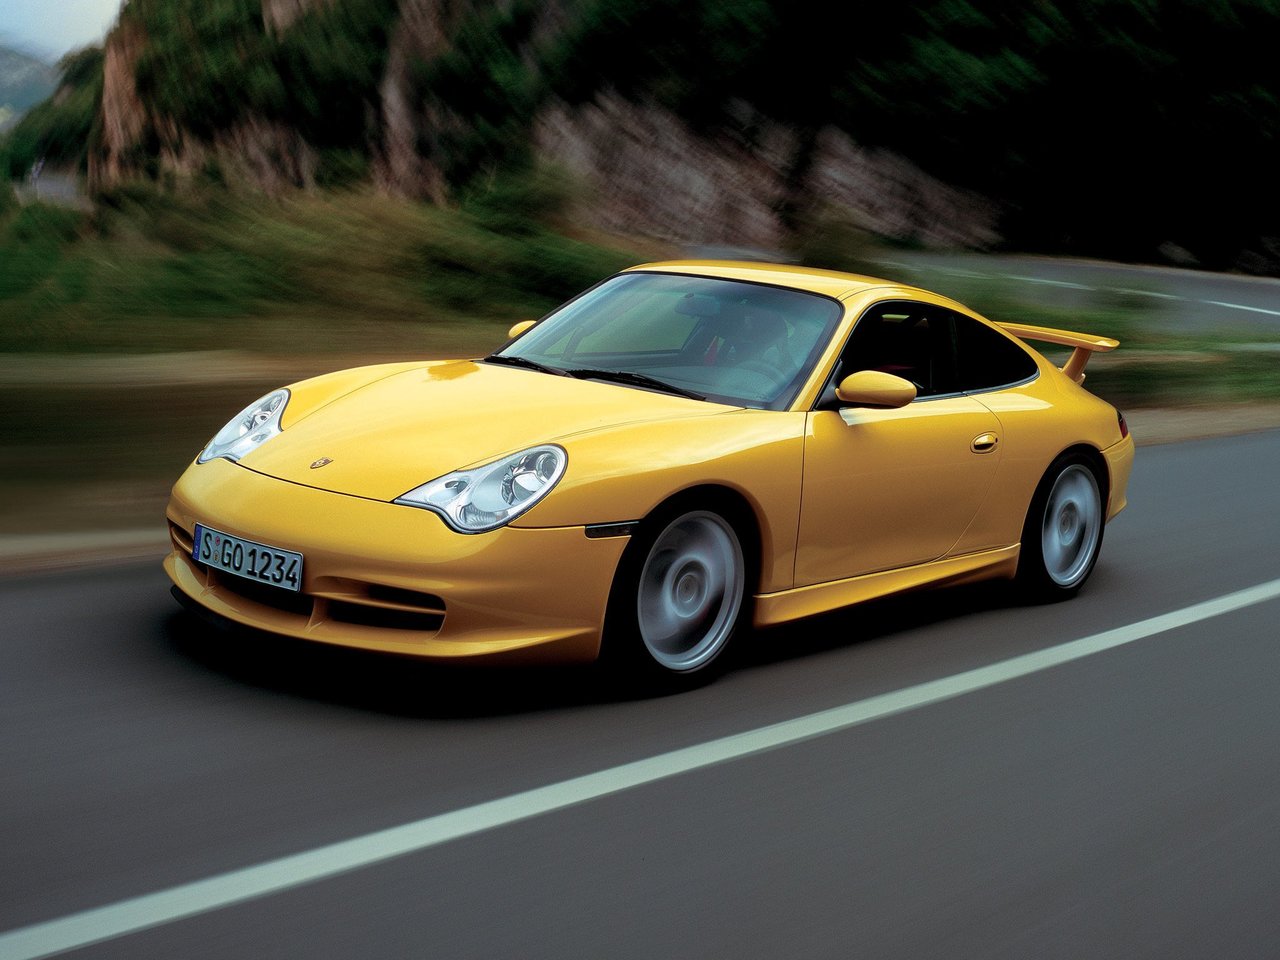 Расход газа одной комплектации купе Porsche 911 GT3. Разница стоимости заправки газом и бензином. Автономный пробег до и после установки ГБО.